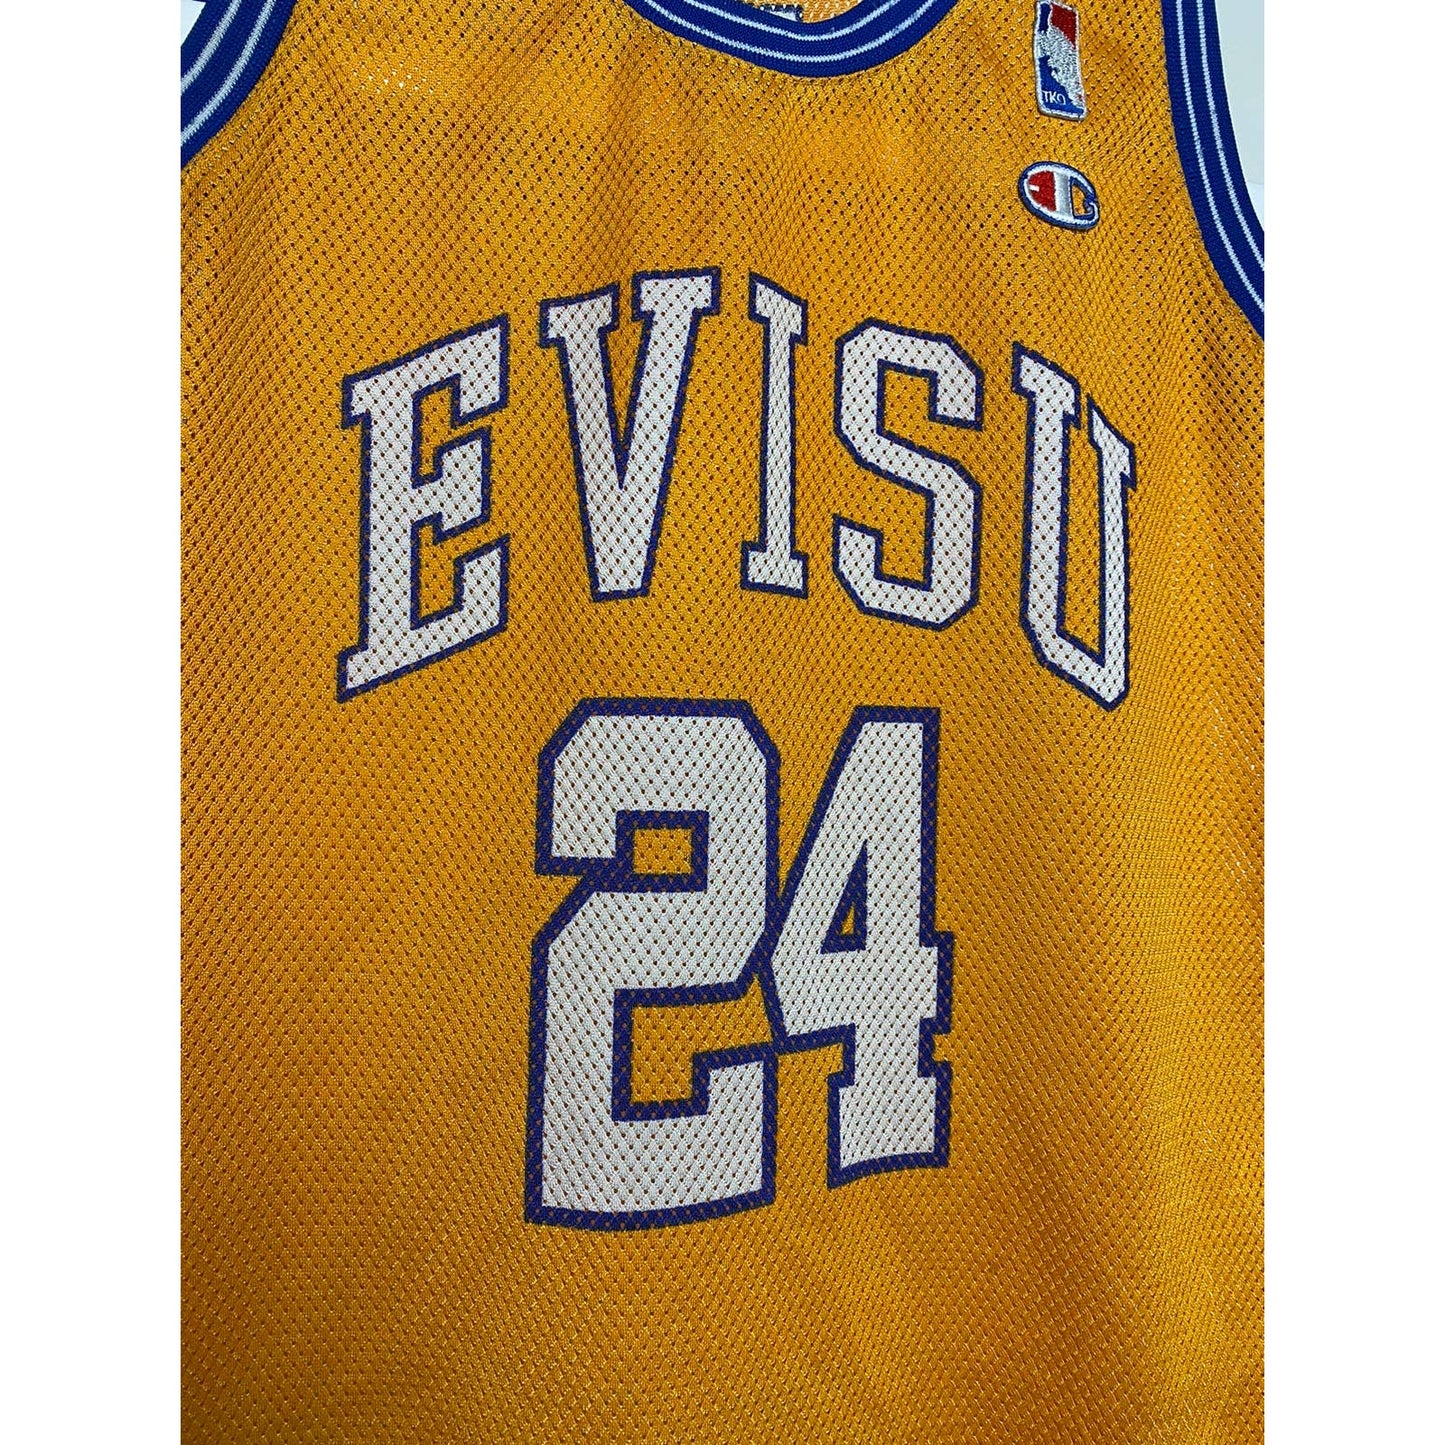 Evisu Jersey basketball Lakers 24 vintage very rare